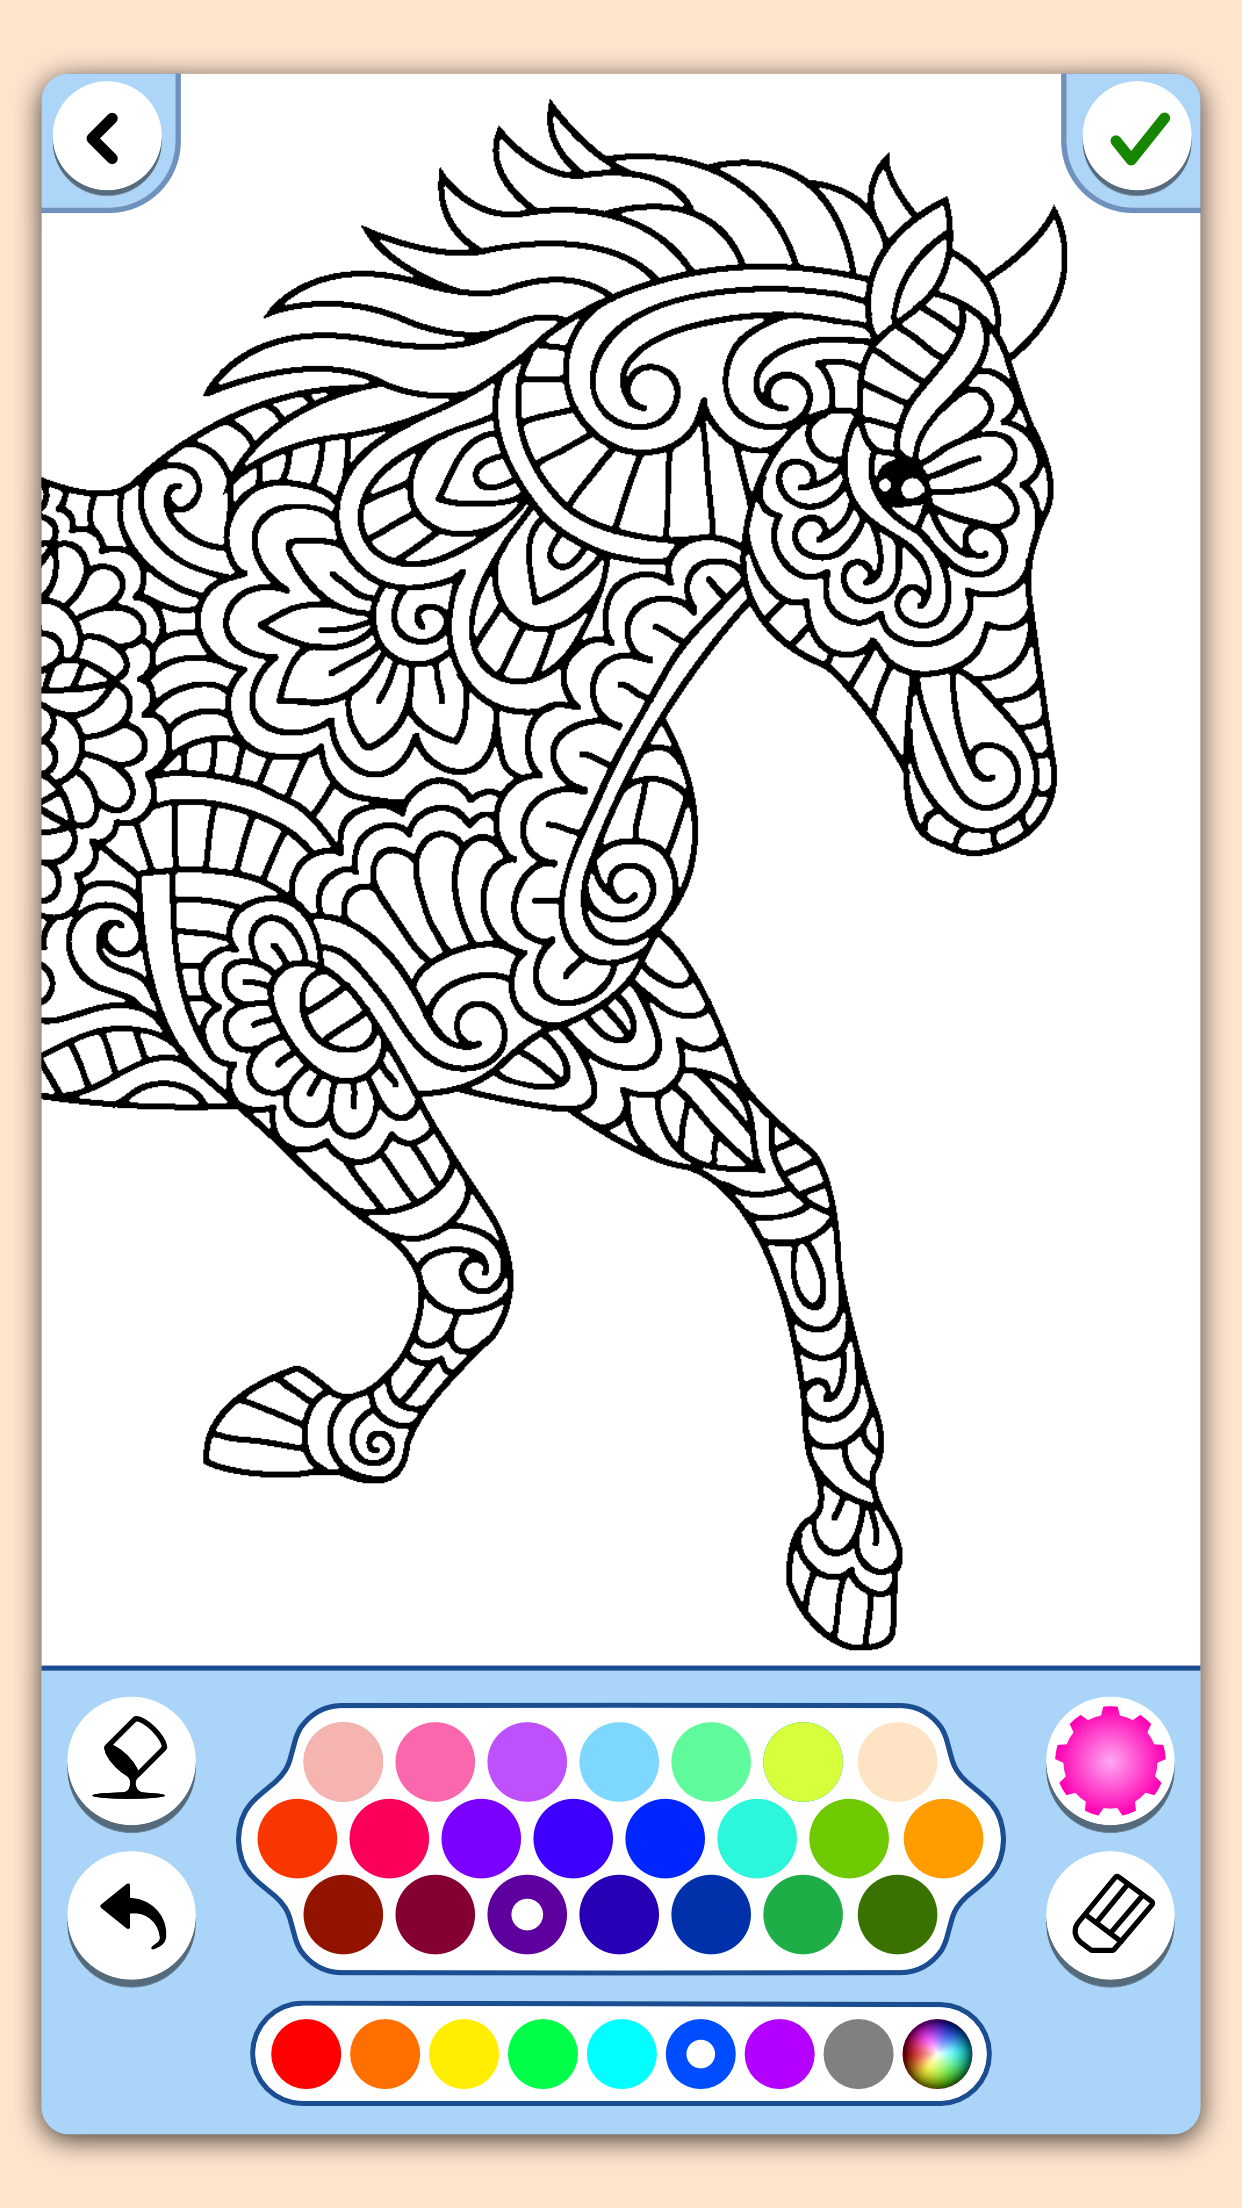 Screenshot 1 of တိရိစ္ဆာန်ရောင်ခြယ် mandala စာမျက်နှာများ 9.5.2